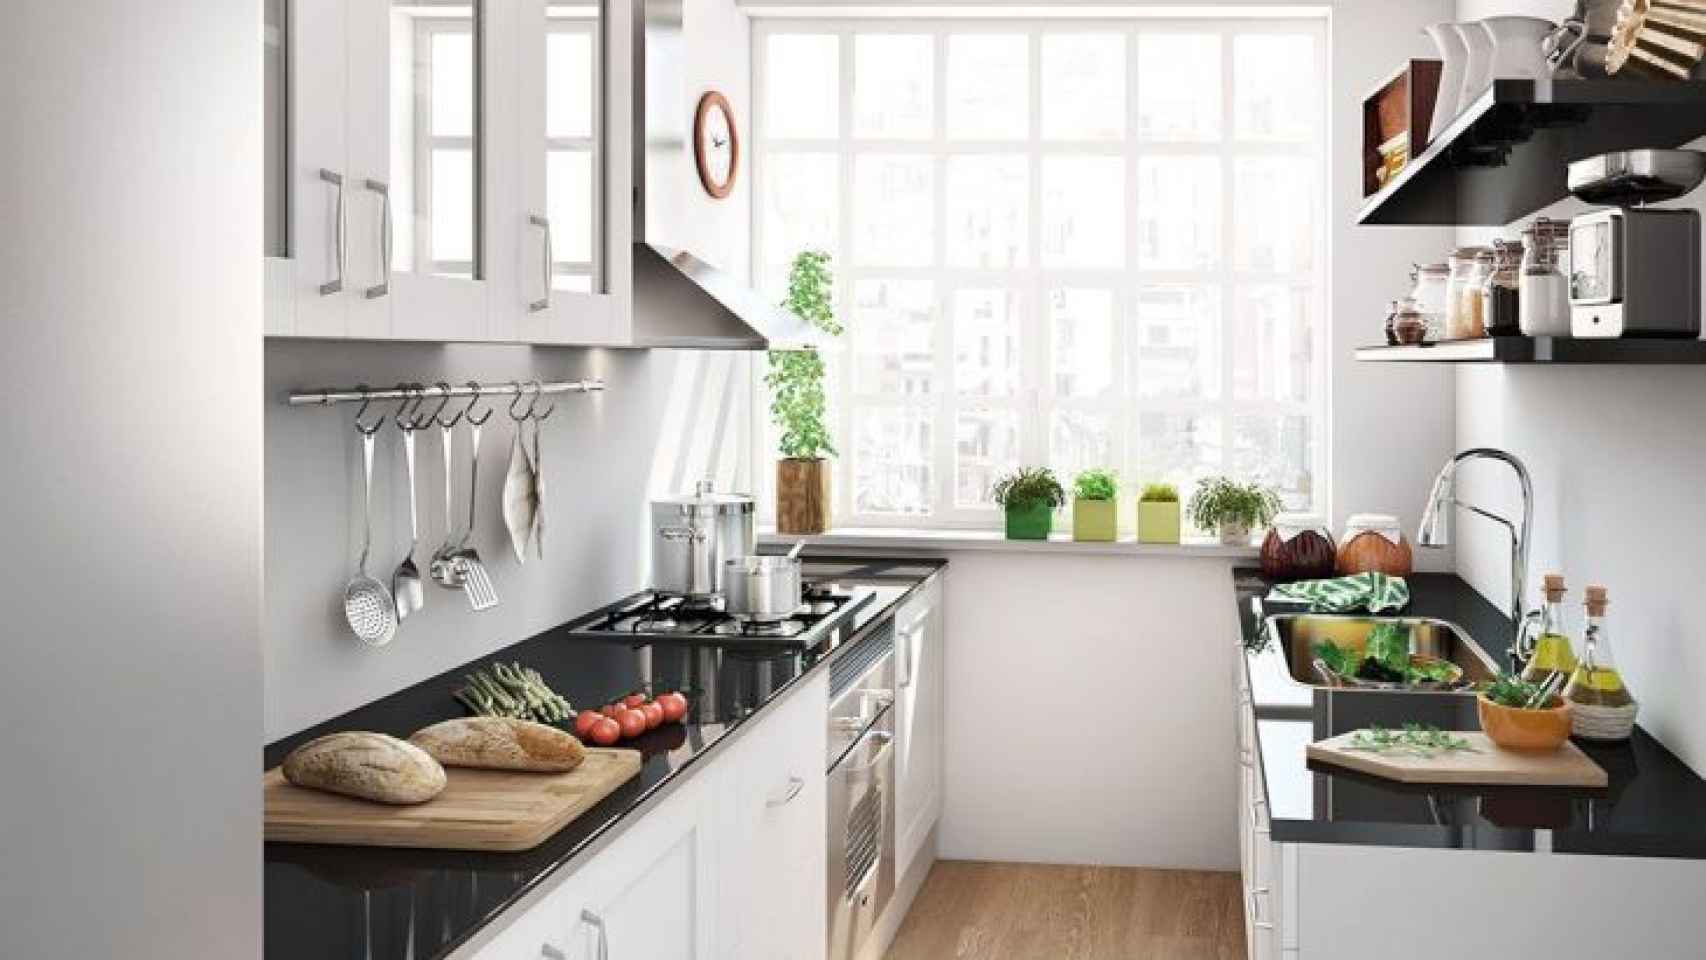 9 ideas para ordenar tu cocina